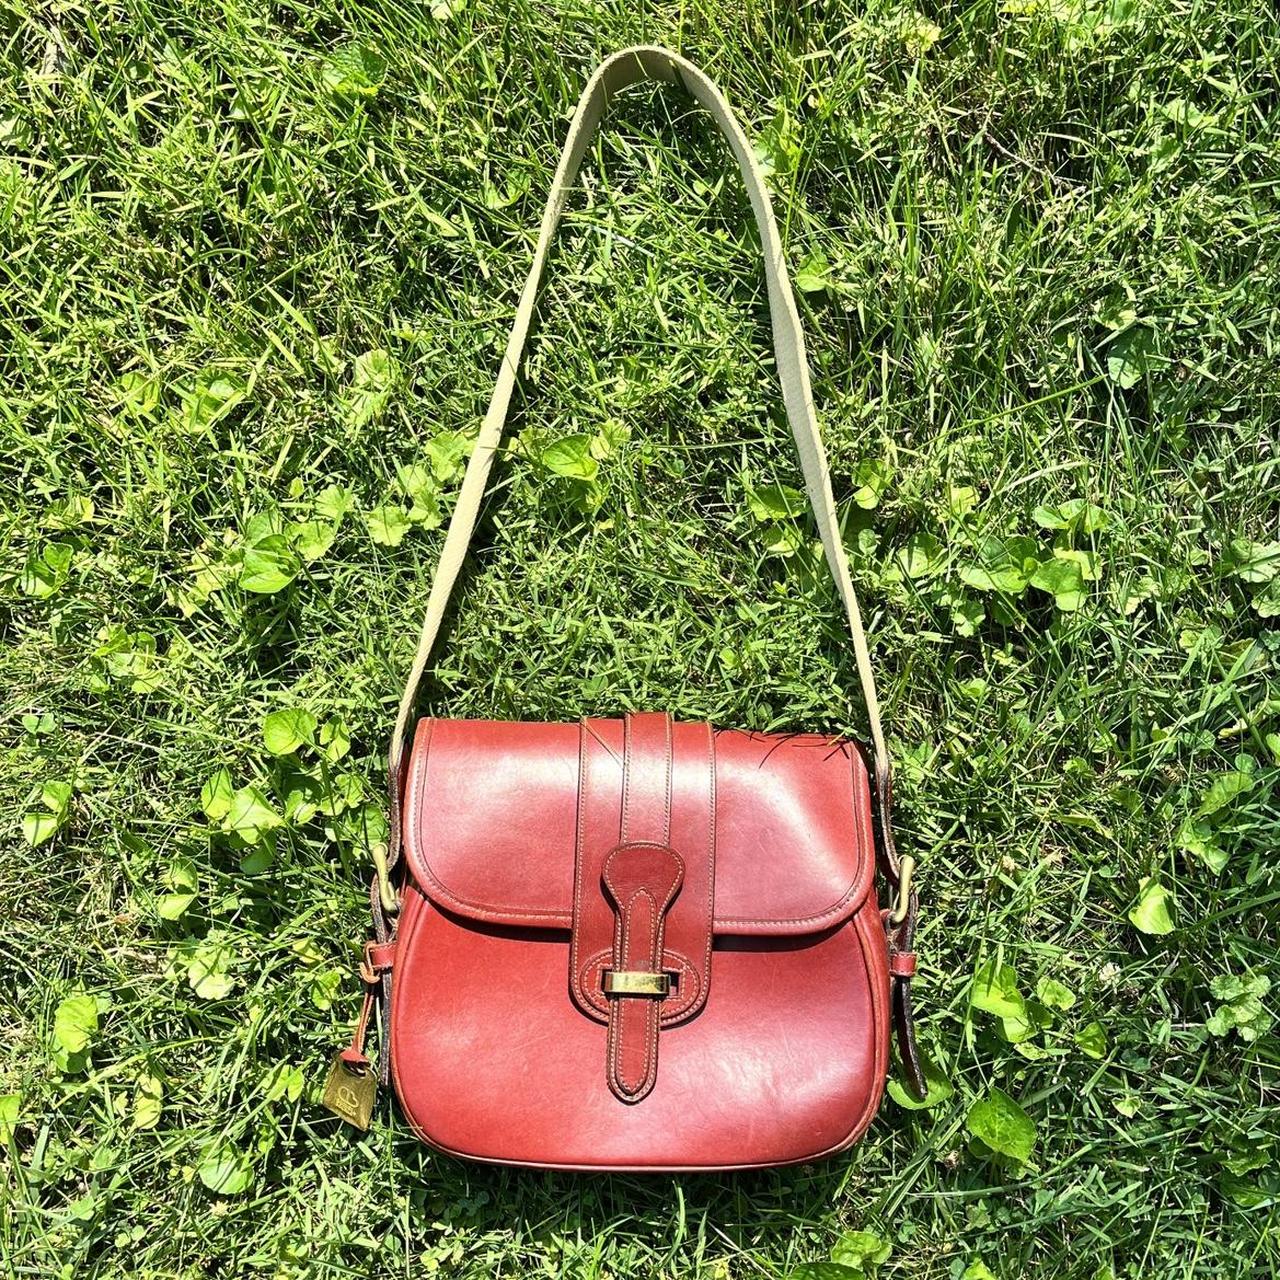 Dooney & Bourke Red Vintage Handbags